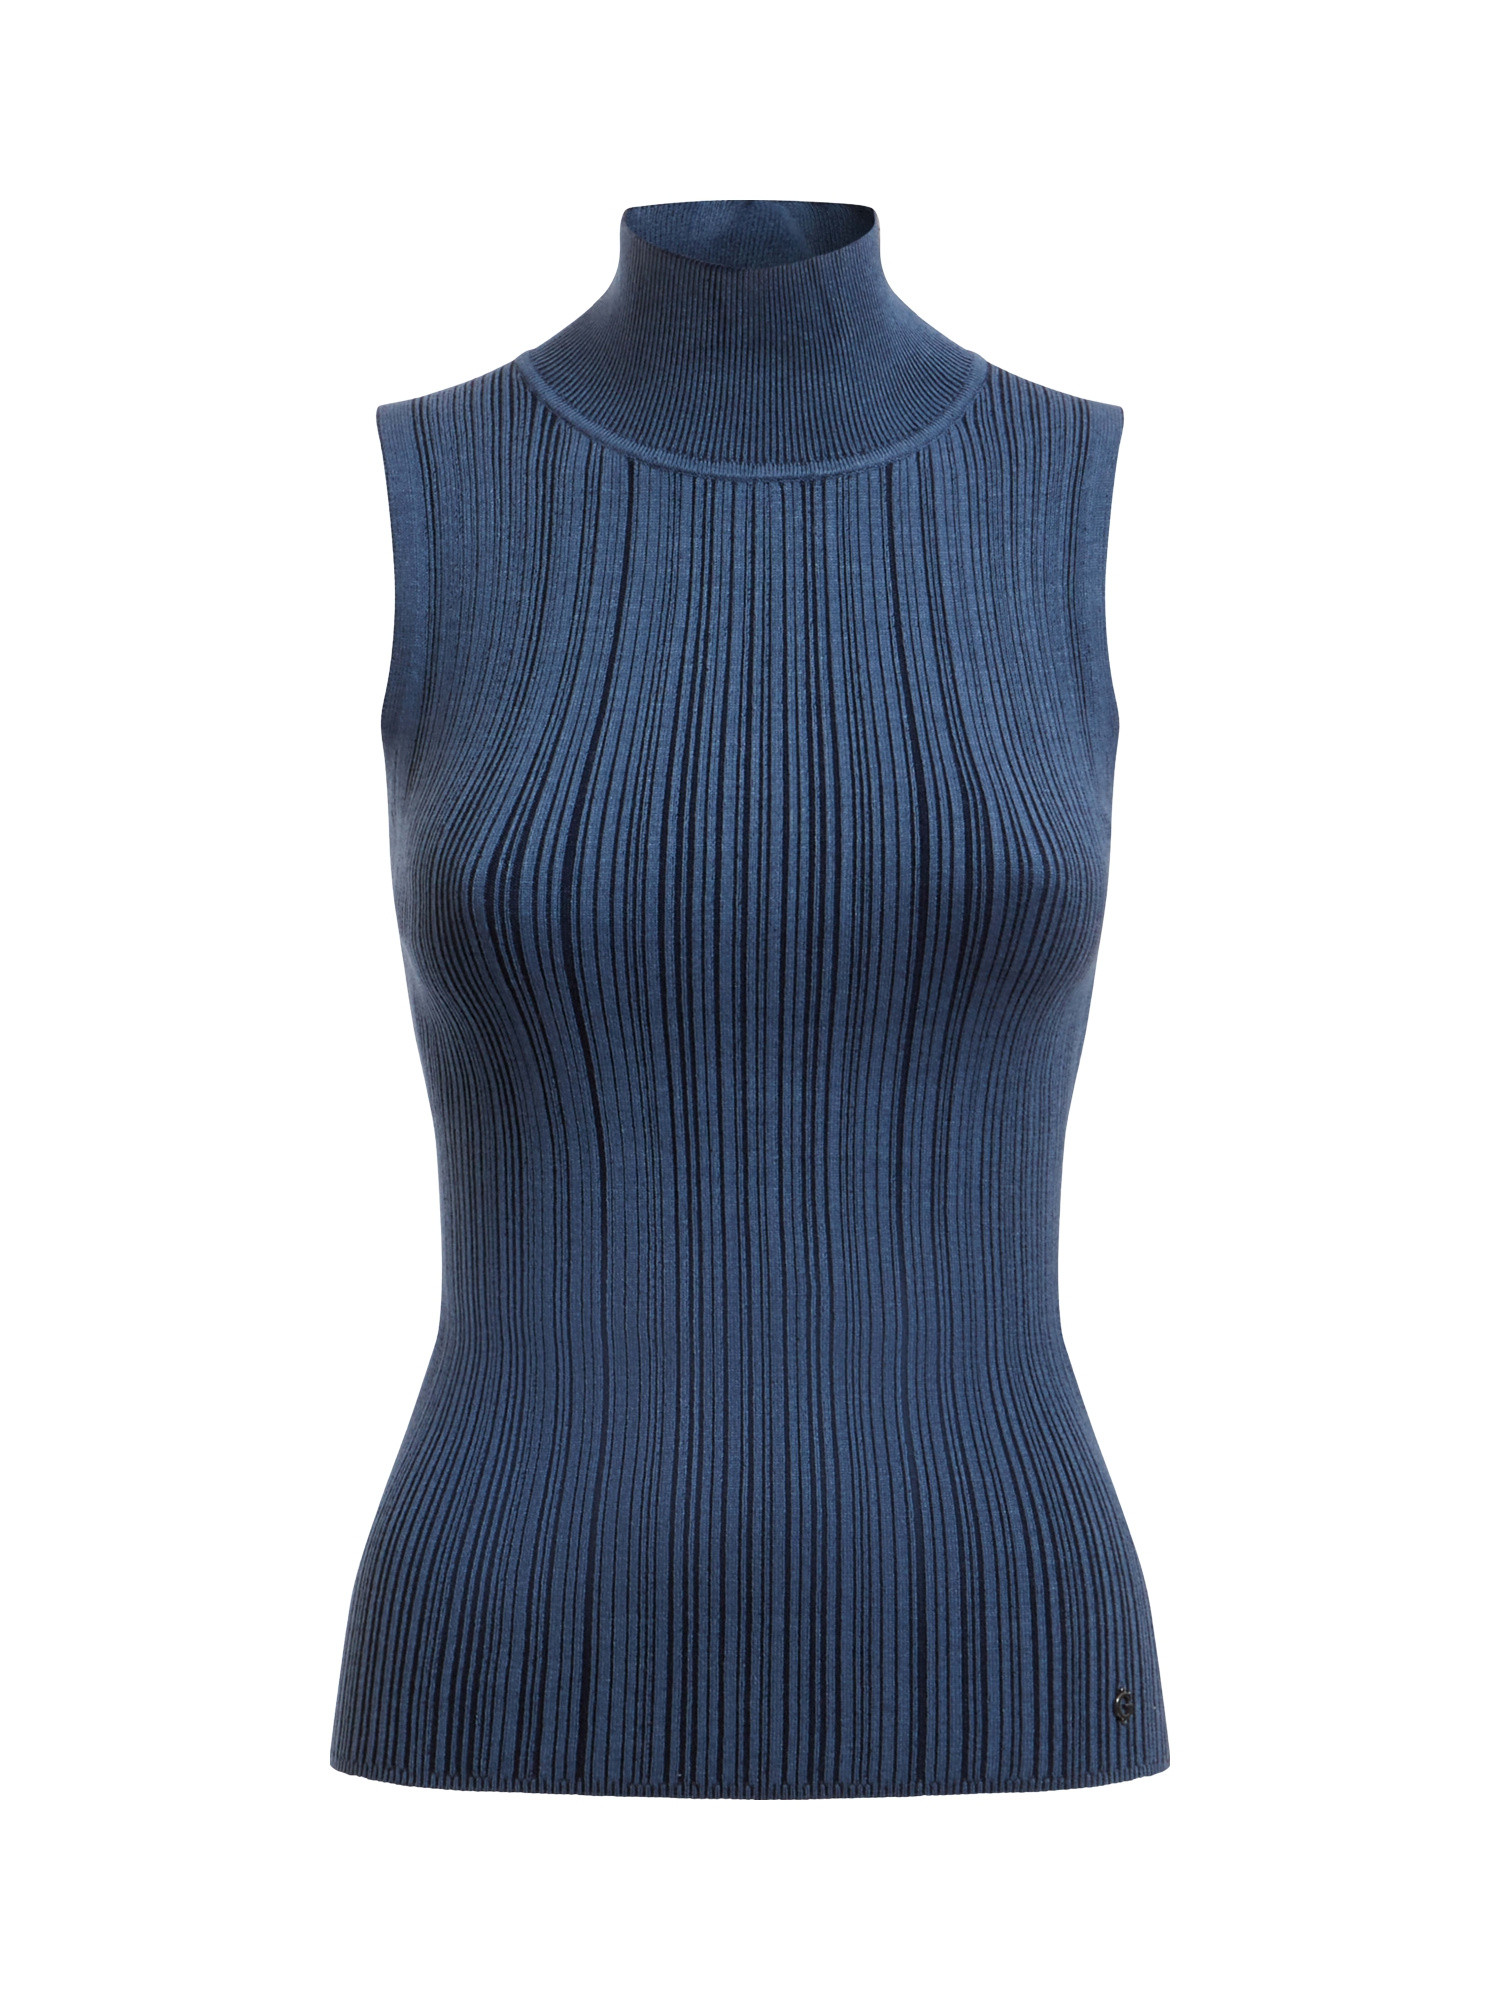 Viscose blend knit top, Dark Blue, large image number 0